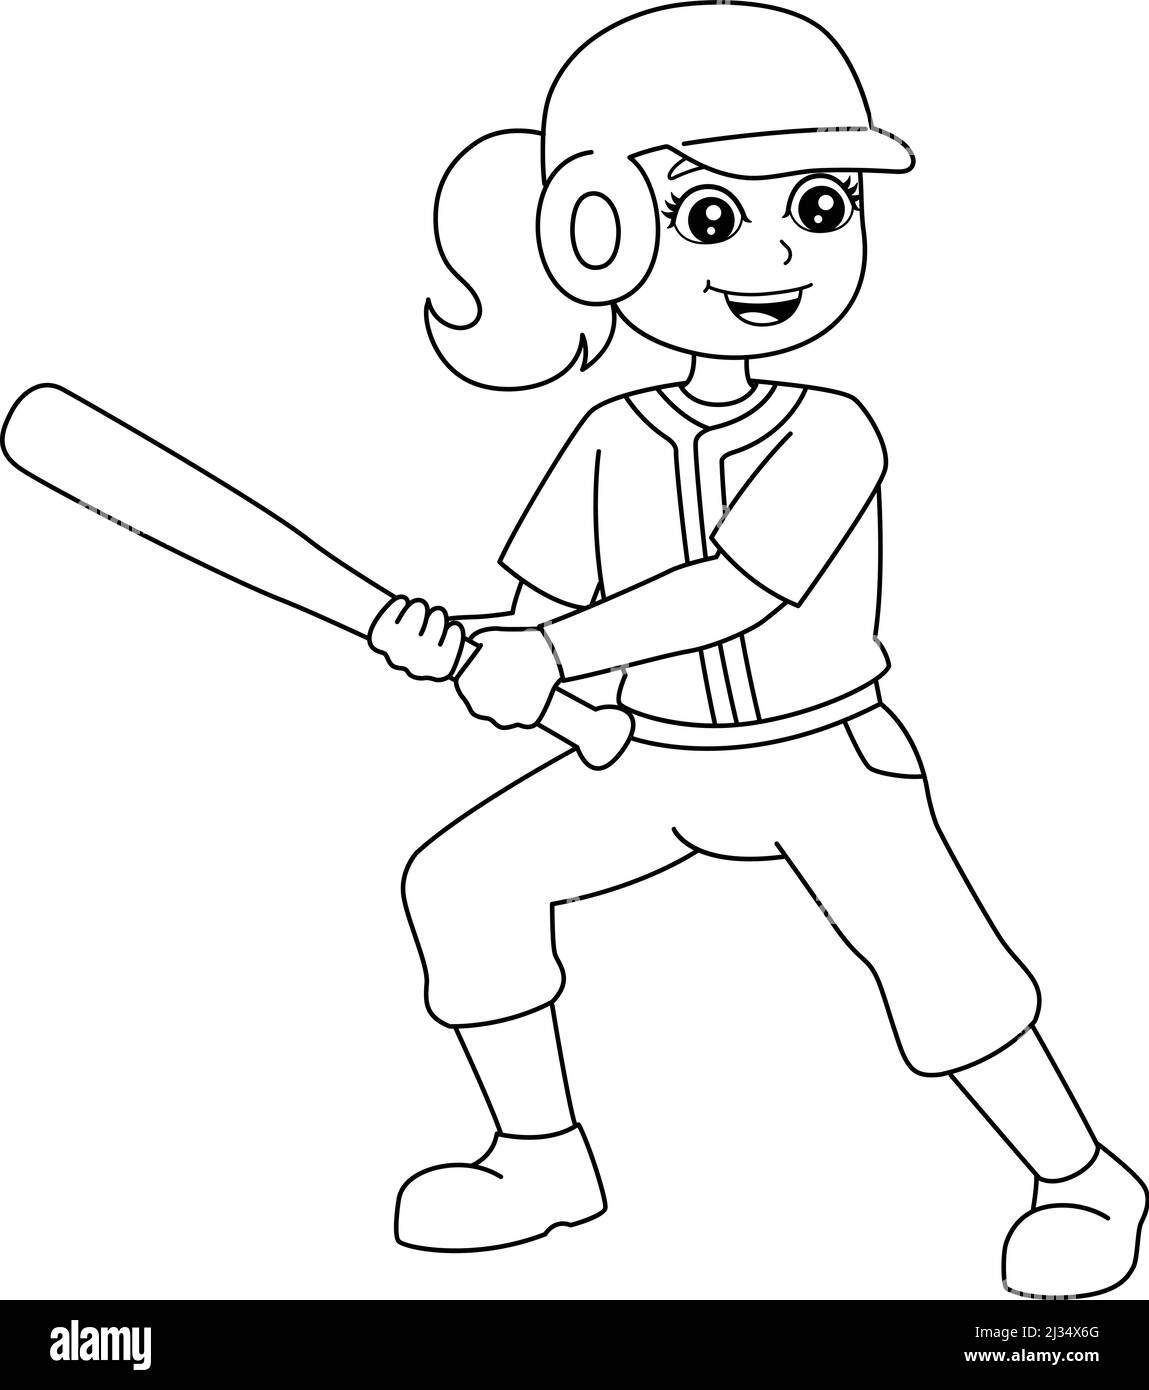 Fille jouant Baseball coloriage page isolé Illustration de Vecteur